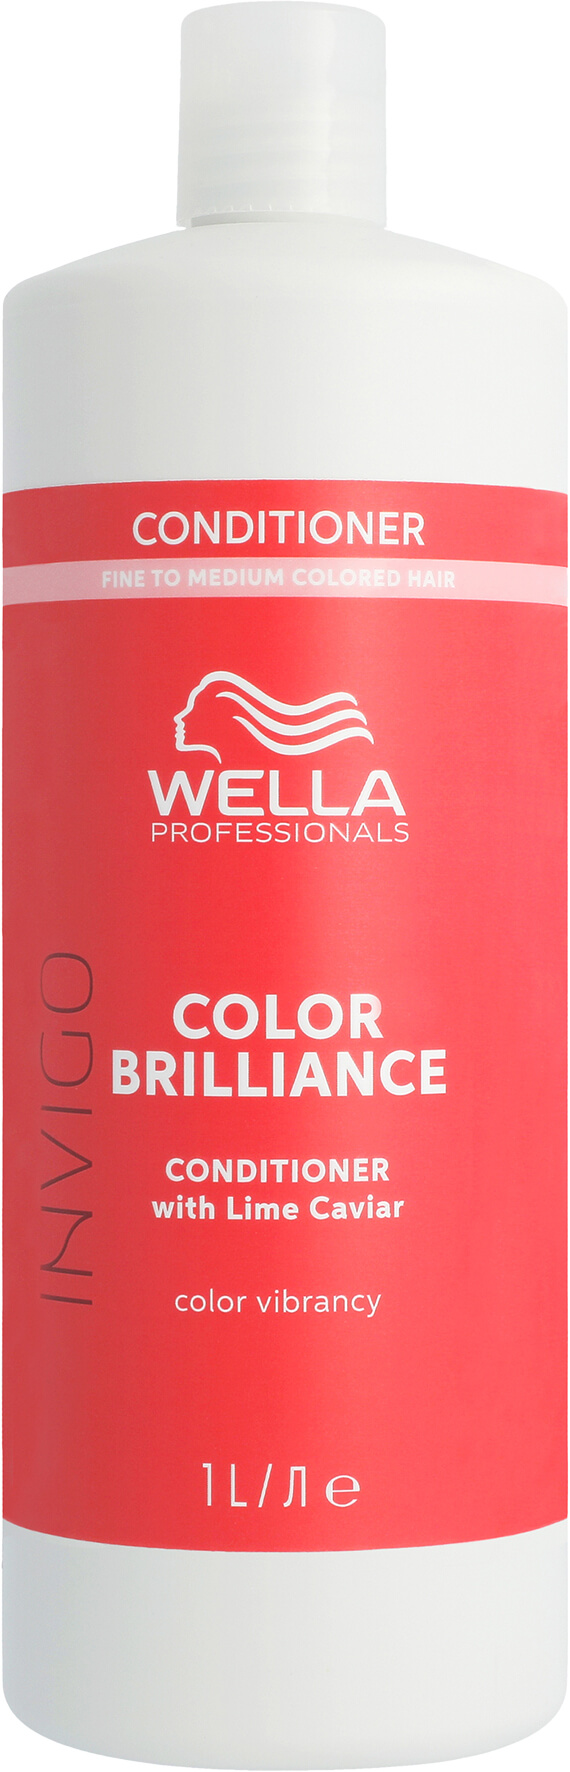 Wella Invigo Color Brilliance Conditioner für feines Haar